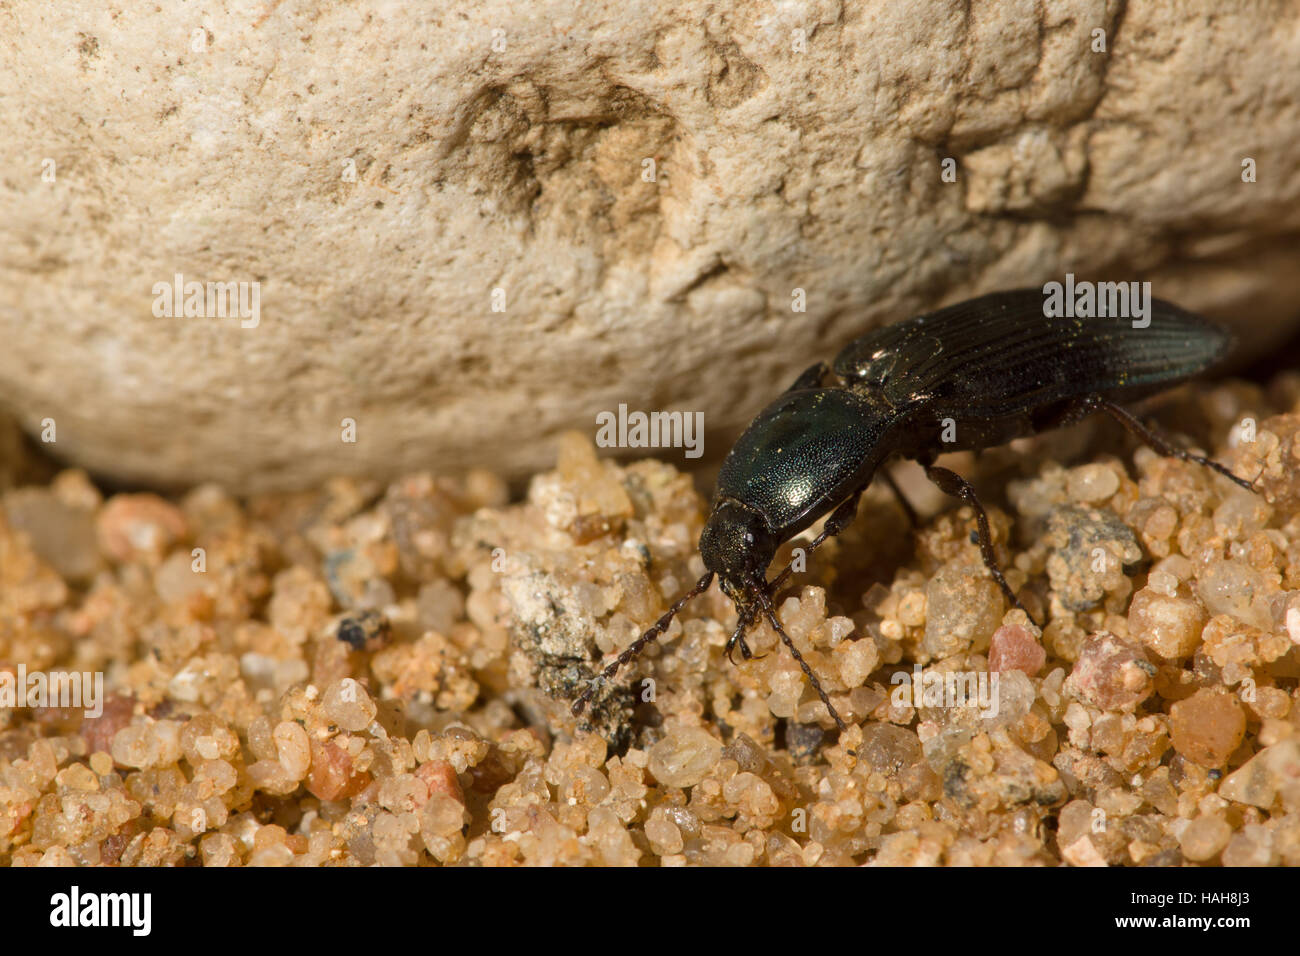 Gran escarabajo negro con un bigote arrastrándose sobre rocas y arena. Foto de stock